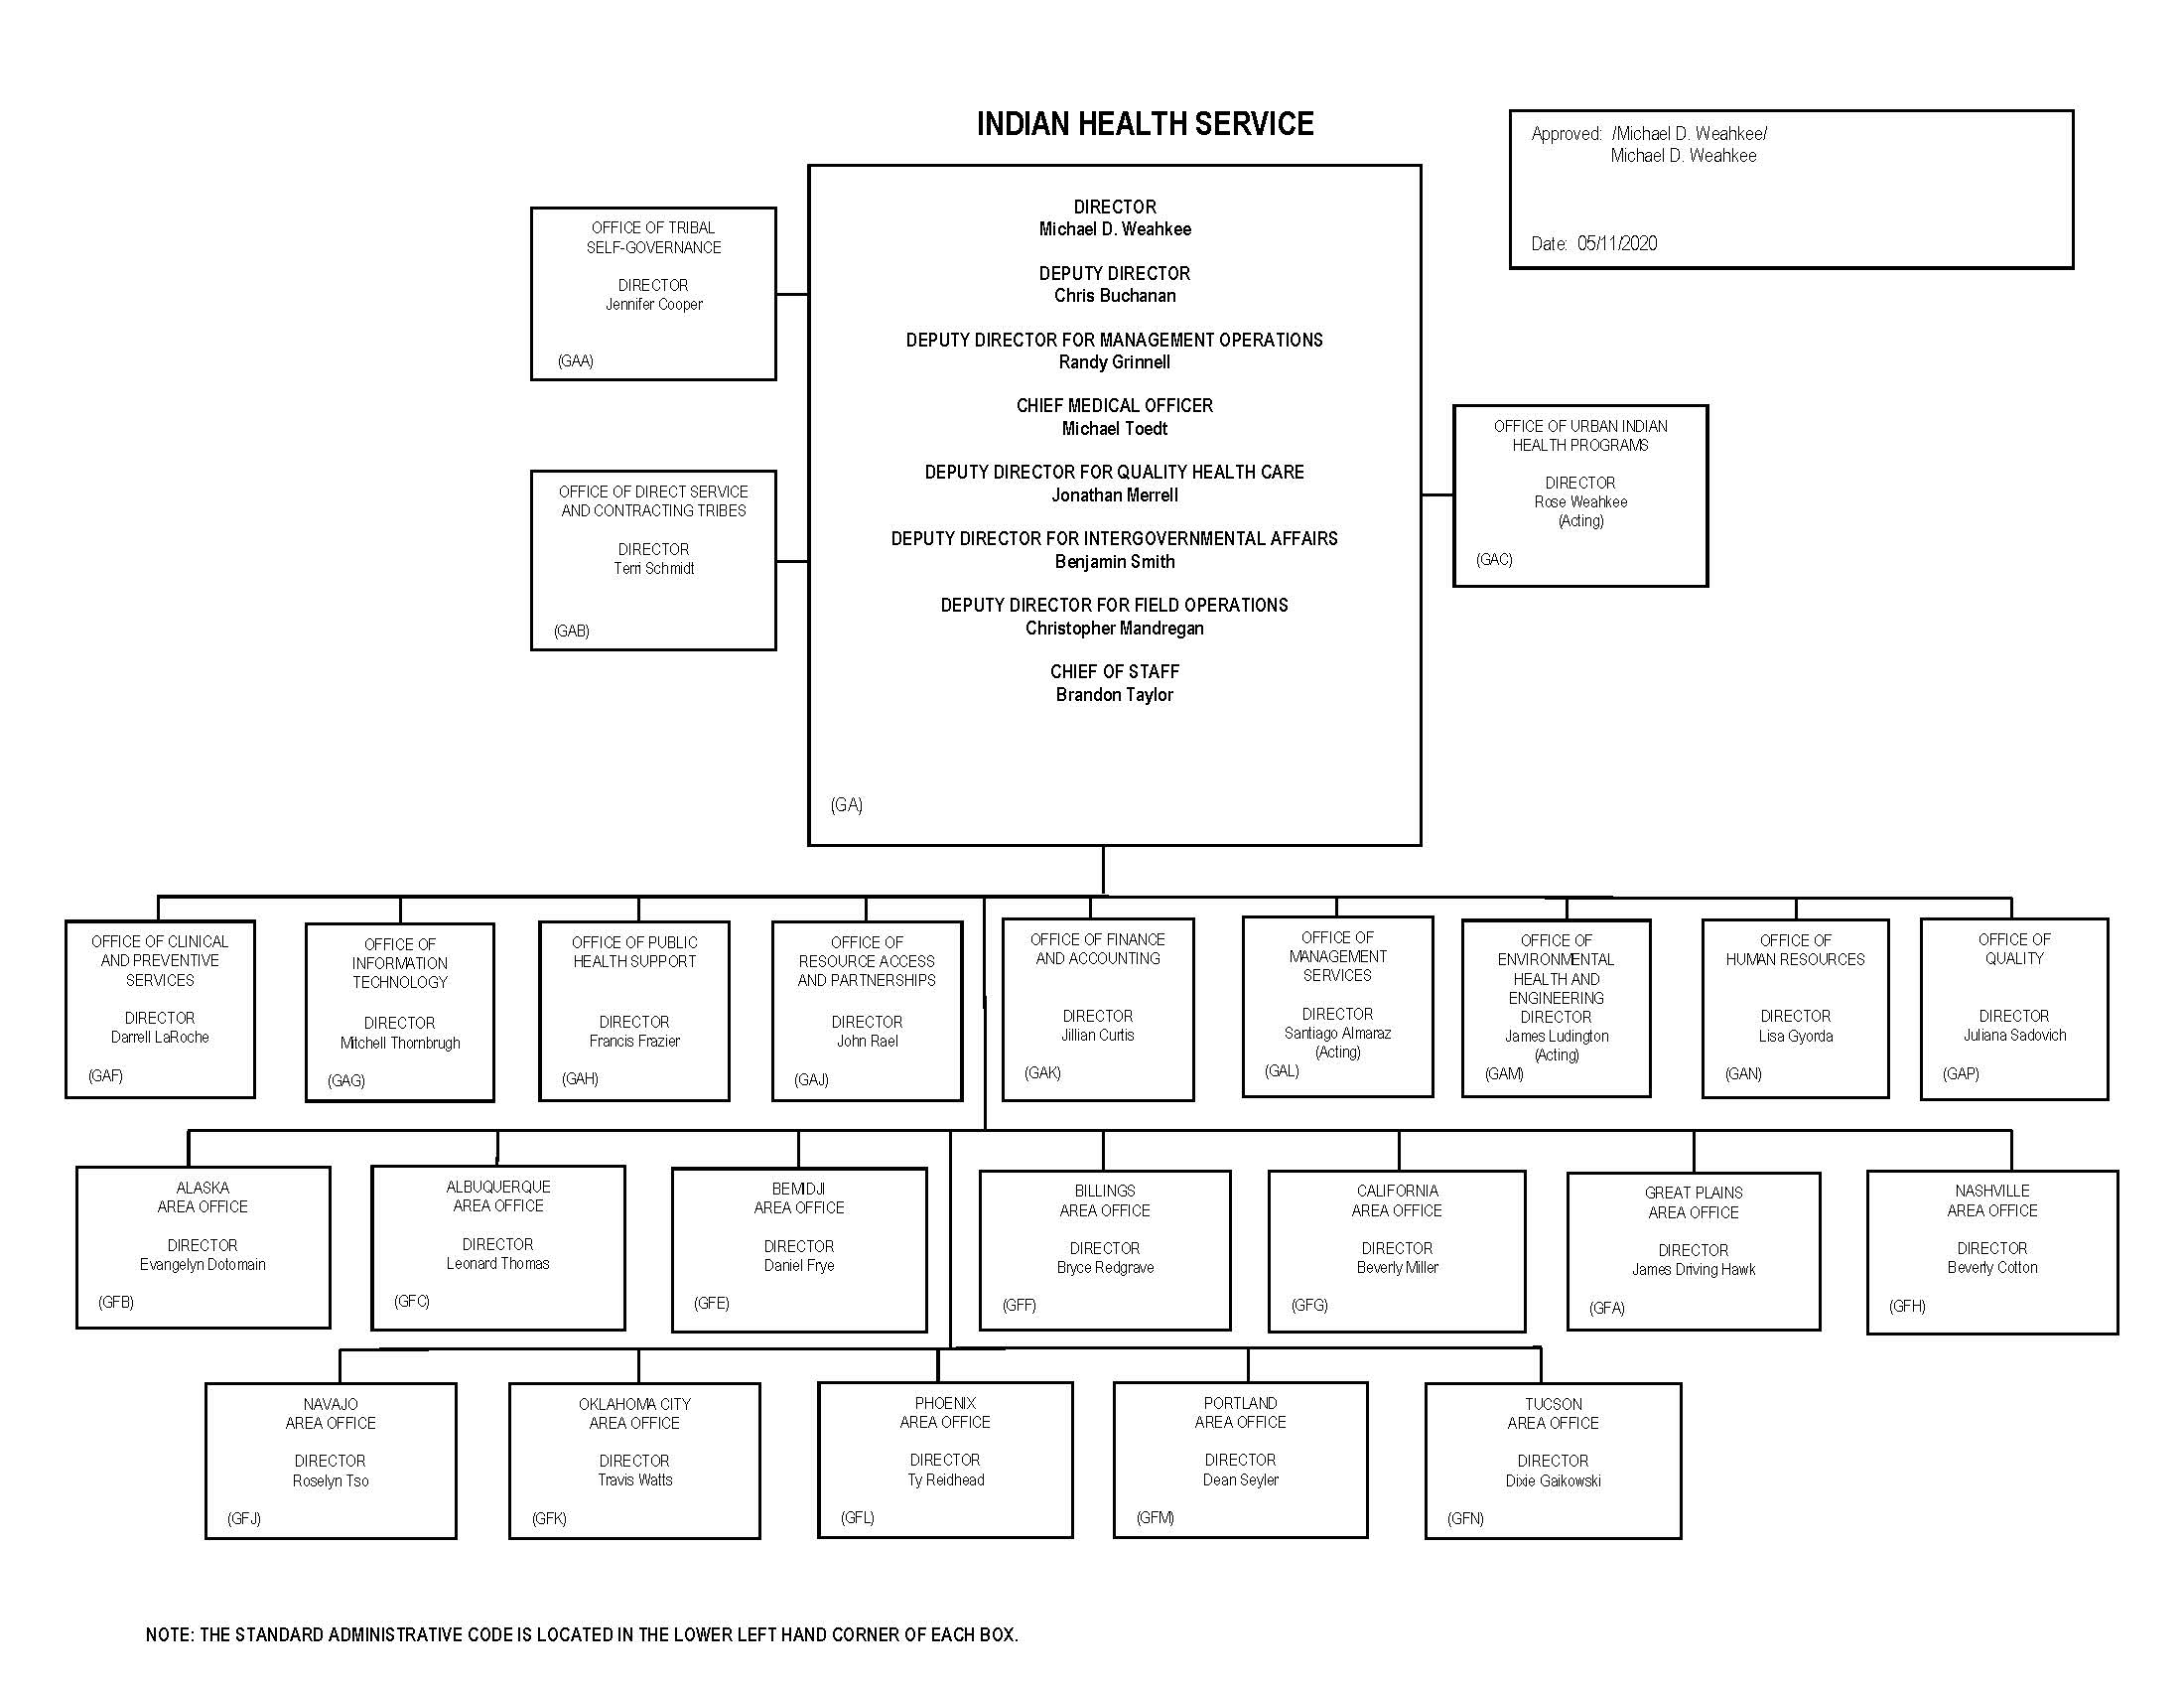 IHS Organization Chart